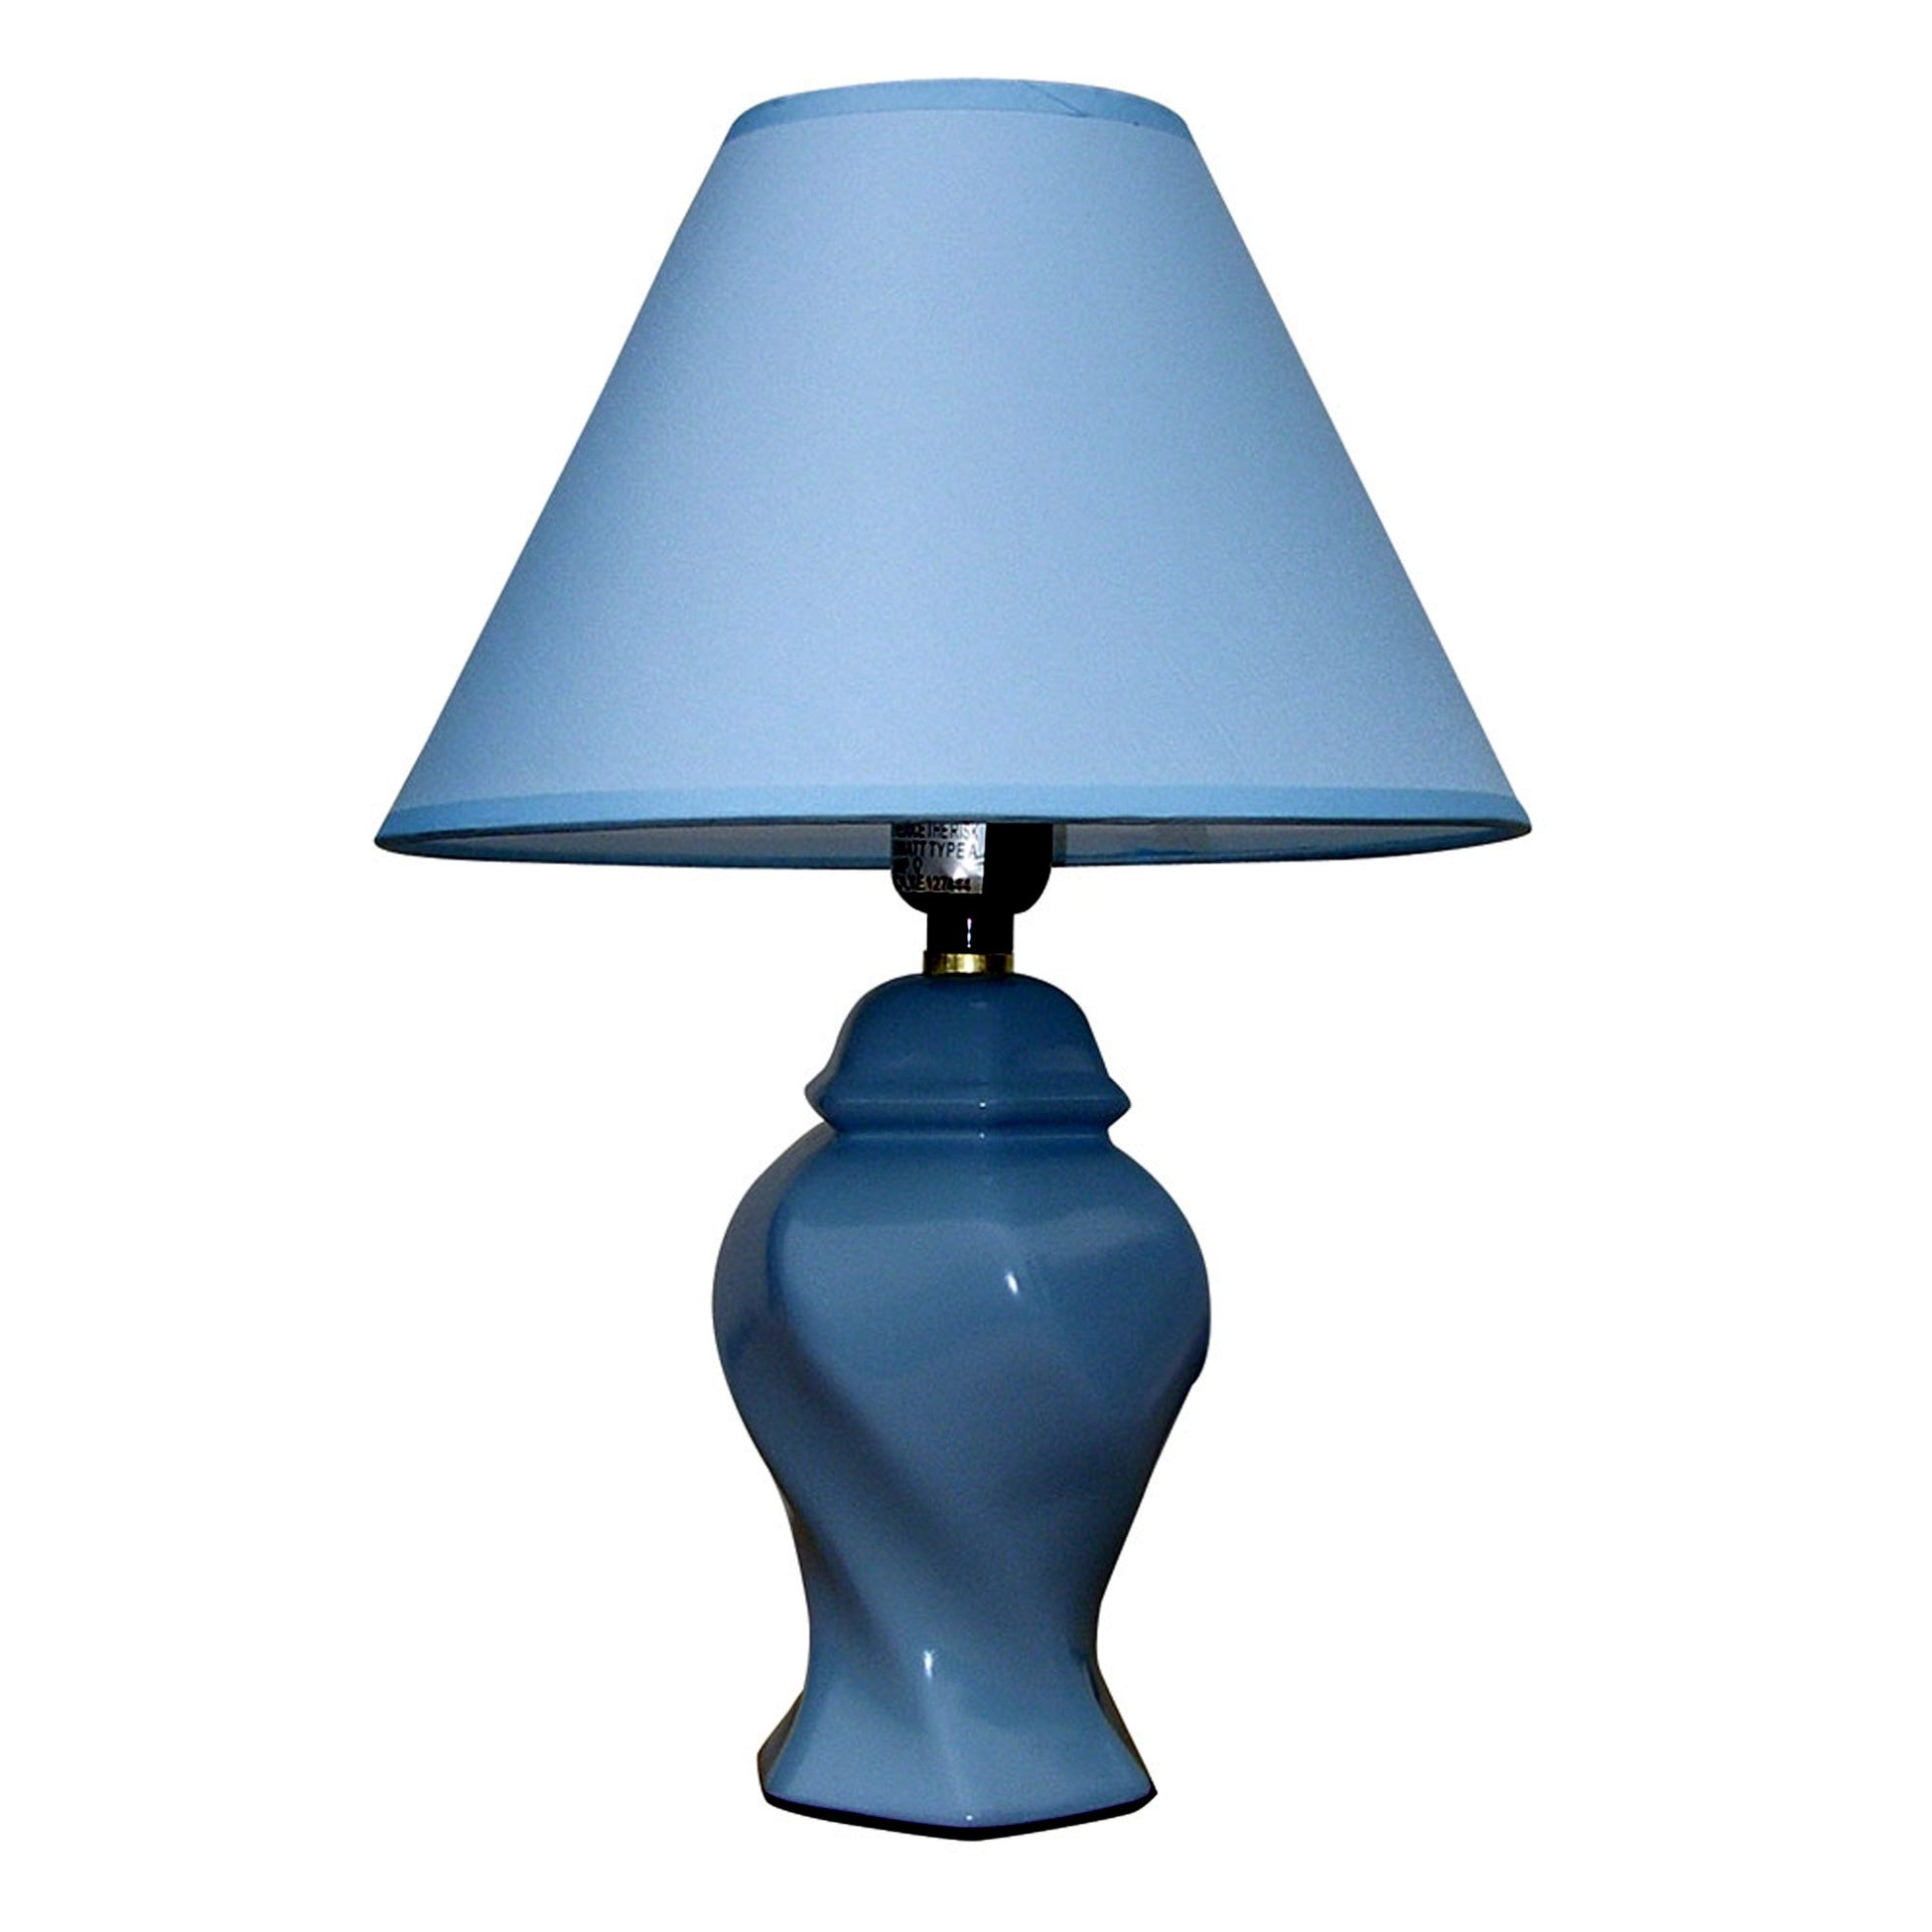 Black Urn Shaped Table Lamp | Table Lamps | Modishstore - 5